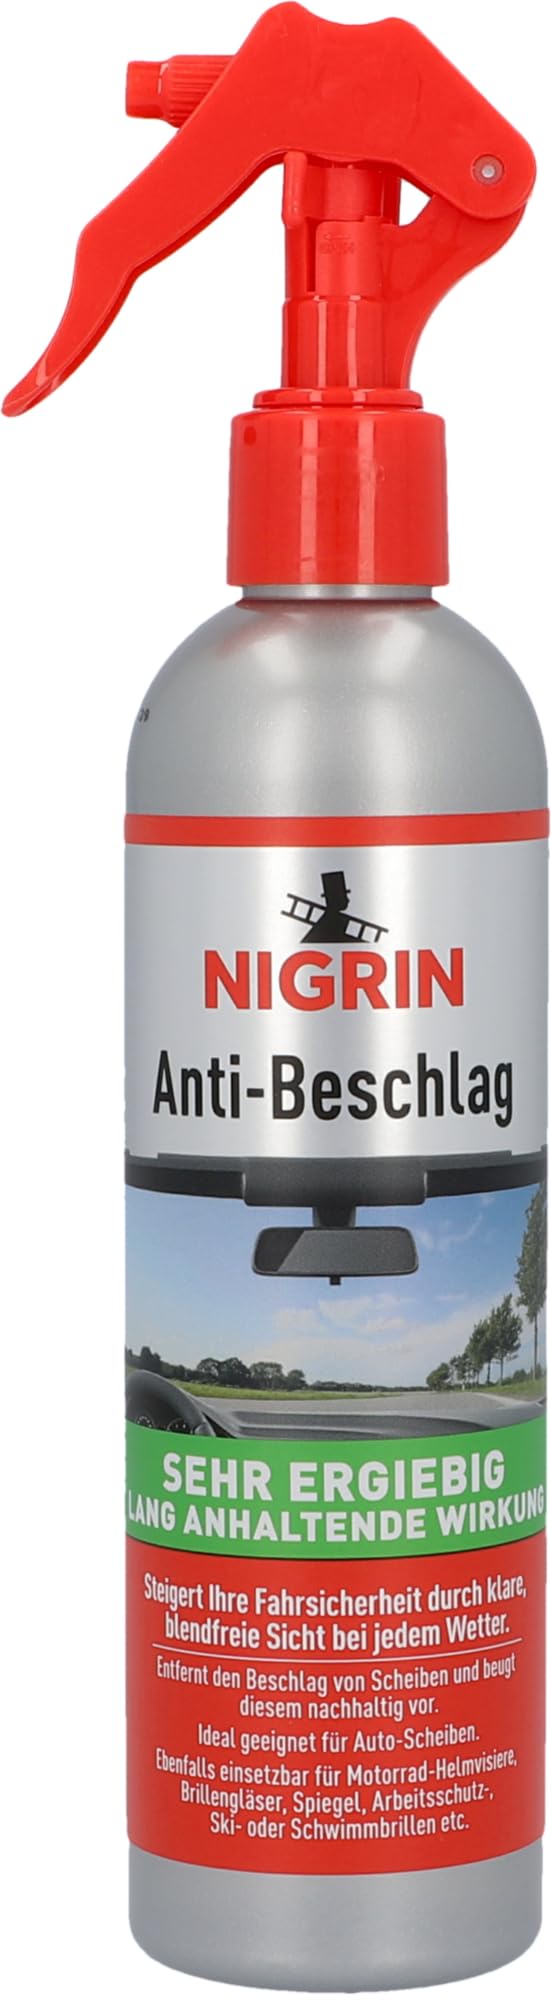 NIGRIN Anti-Beschlag Pumpzerstäuber 300 ml von NIGRIN